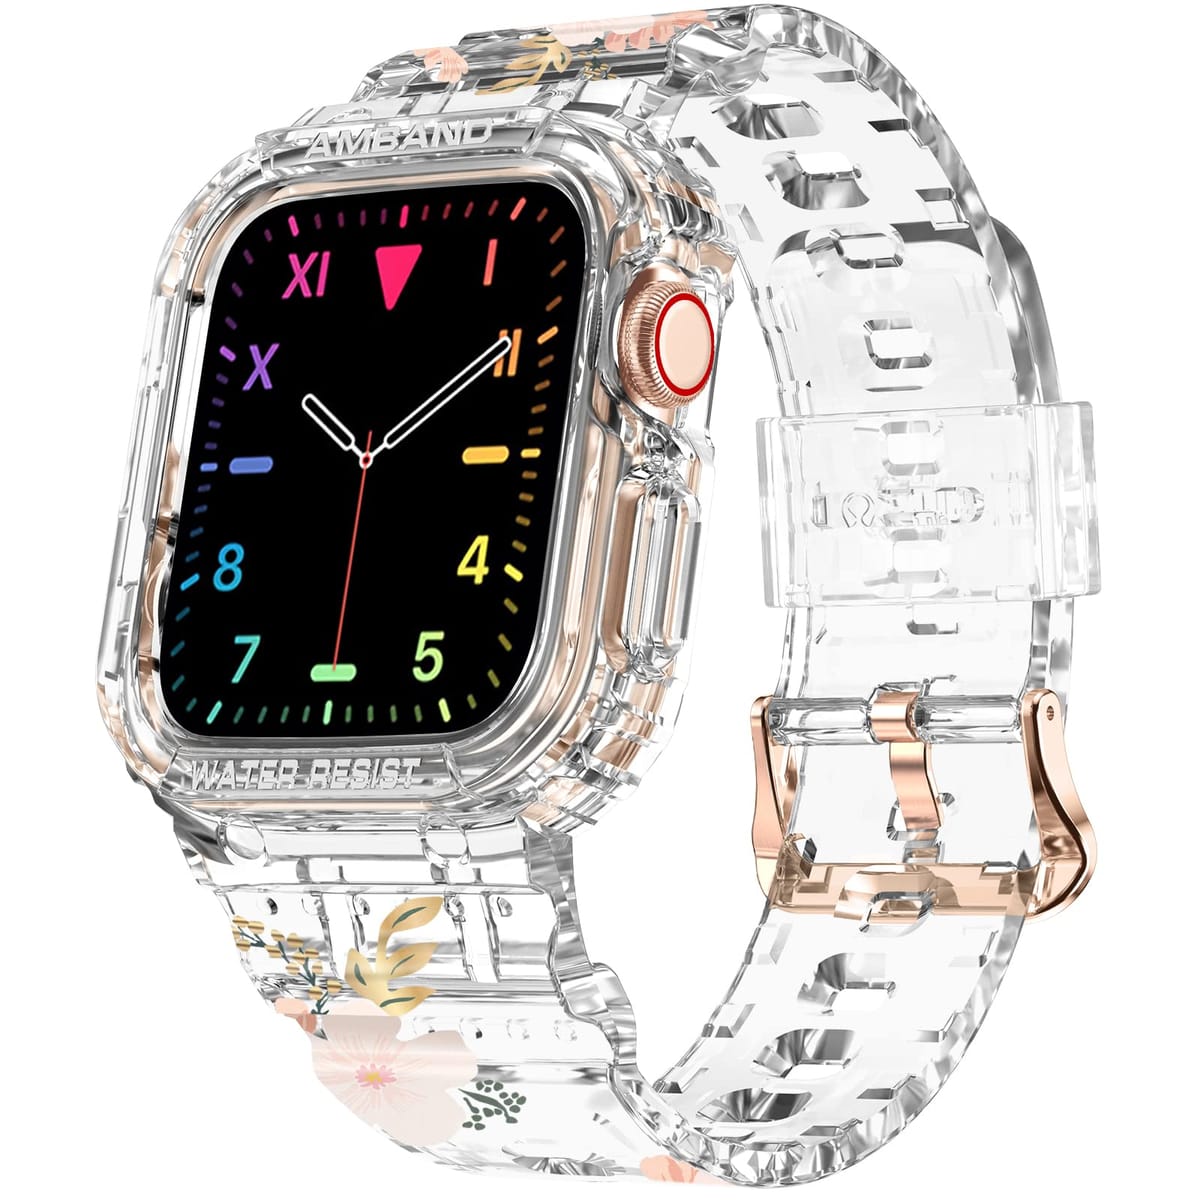 &#128142; [クリスタルクリアな透明度]: 超クリアな素材で作られているバンド付きamBandケースは、Apple Watchの崇高な美しさを賞賛することができます。 透明なデザインは、どんな服装やジュエリーにもマッチし、さらにファッショナブルに見せます!&#128293;[ファッショナブルに保護]: amBandケースバンドコンボは、Apple Watchにスタイリッシュなタッチを加え、落下や衝撃からミリタリーグレードの保護を提供します。 時計の安全性を犠牲にすることなく、スタイルを切り替えることができます。TCED[隆起したエッジスクリーン保護]: 1.2mmの隆起したエッジが特徴のamBandケースは、高品質の素材で作られており、Apple Watchの画面を硬い表面から保護し、衝撃や傷による損傷を防ぎます。&#127775;[精密設計]: 当社のamBandケースは正確にカットされており、Apple Watch Series 9、8、7、6、SE、5、4、3 (41mm、40mm、38mmのサイズ) に完璧にフィットします。 かさばることなくぴったりとフィットし、洗練されたスタイリッシュな外観を維持しながら、完全な保護を提供します。&#127873;[素晴らしいギフトアイデア]: 完璧なギフトをお探しですか? 当社のApple Watchケースは、ファッショナブルな外観を維持しながらデバイスを保護したい方への実用的でありながらスタイリッシュなギフトアイデアです。 この思いやりのあるプレゼントで、彼らの安全性とファッションセンスを気にかけていることを示しましょう。 amBand Apple Watch用クリアバンド 38mm 40mm 41mm ケース付き レディース キュート ガールズ クリスタル 耐久性 スポーツ 透明 保護 iWatch Series 9/8/7/6/5/4/3/2/1 SE用、ワイルドフラワー